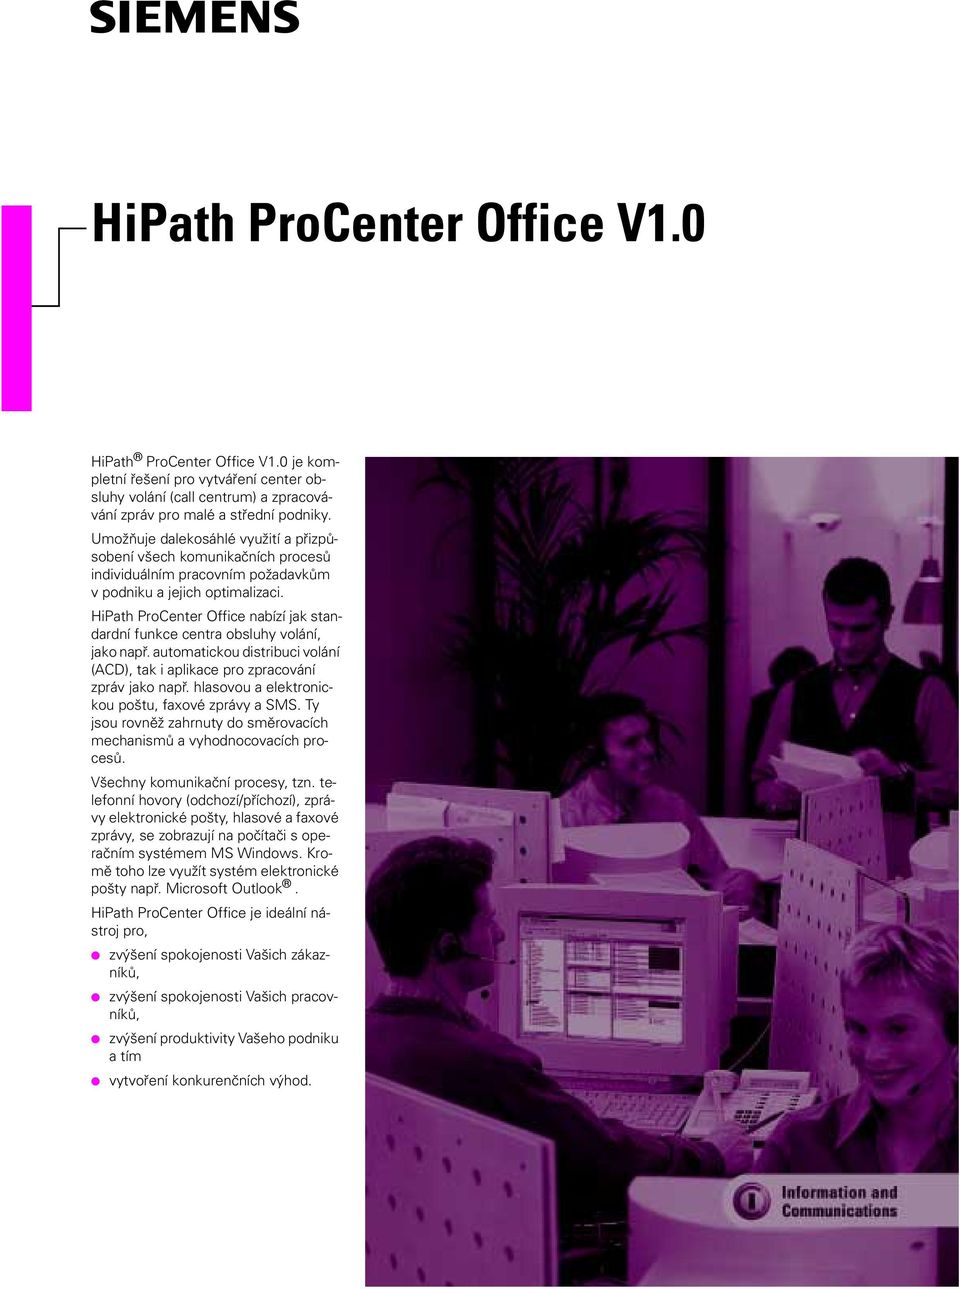 HiPath ProCenter Office nabízí jak standardní funkce centra obsluhy volání, jako např. automatickou distribuci volání (ACD), tak i aplikace pro zpracování zpráv jako např.